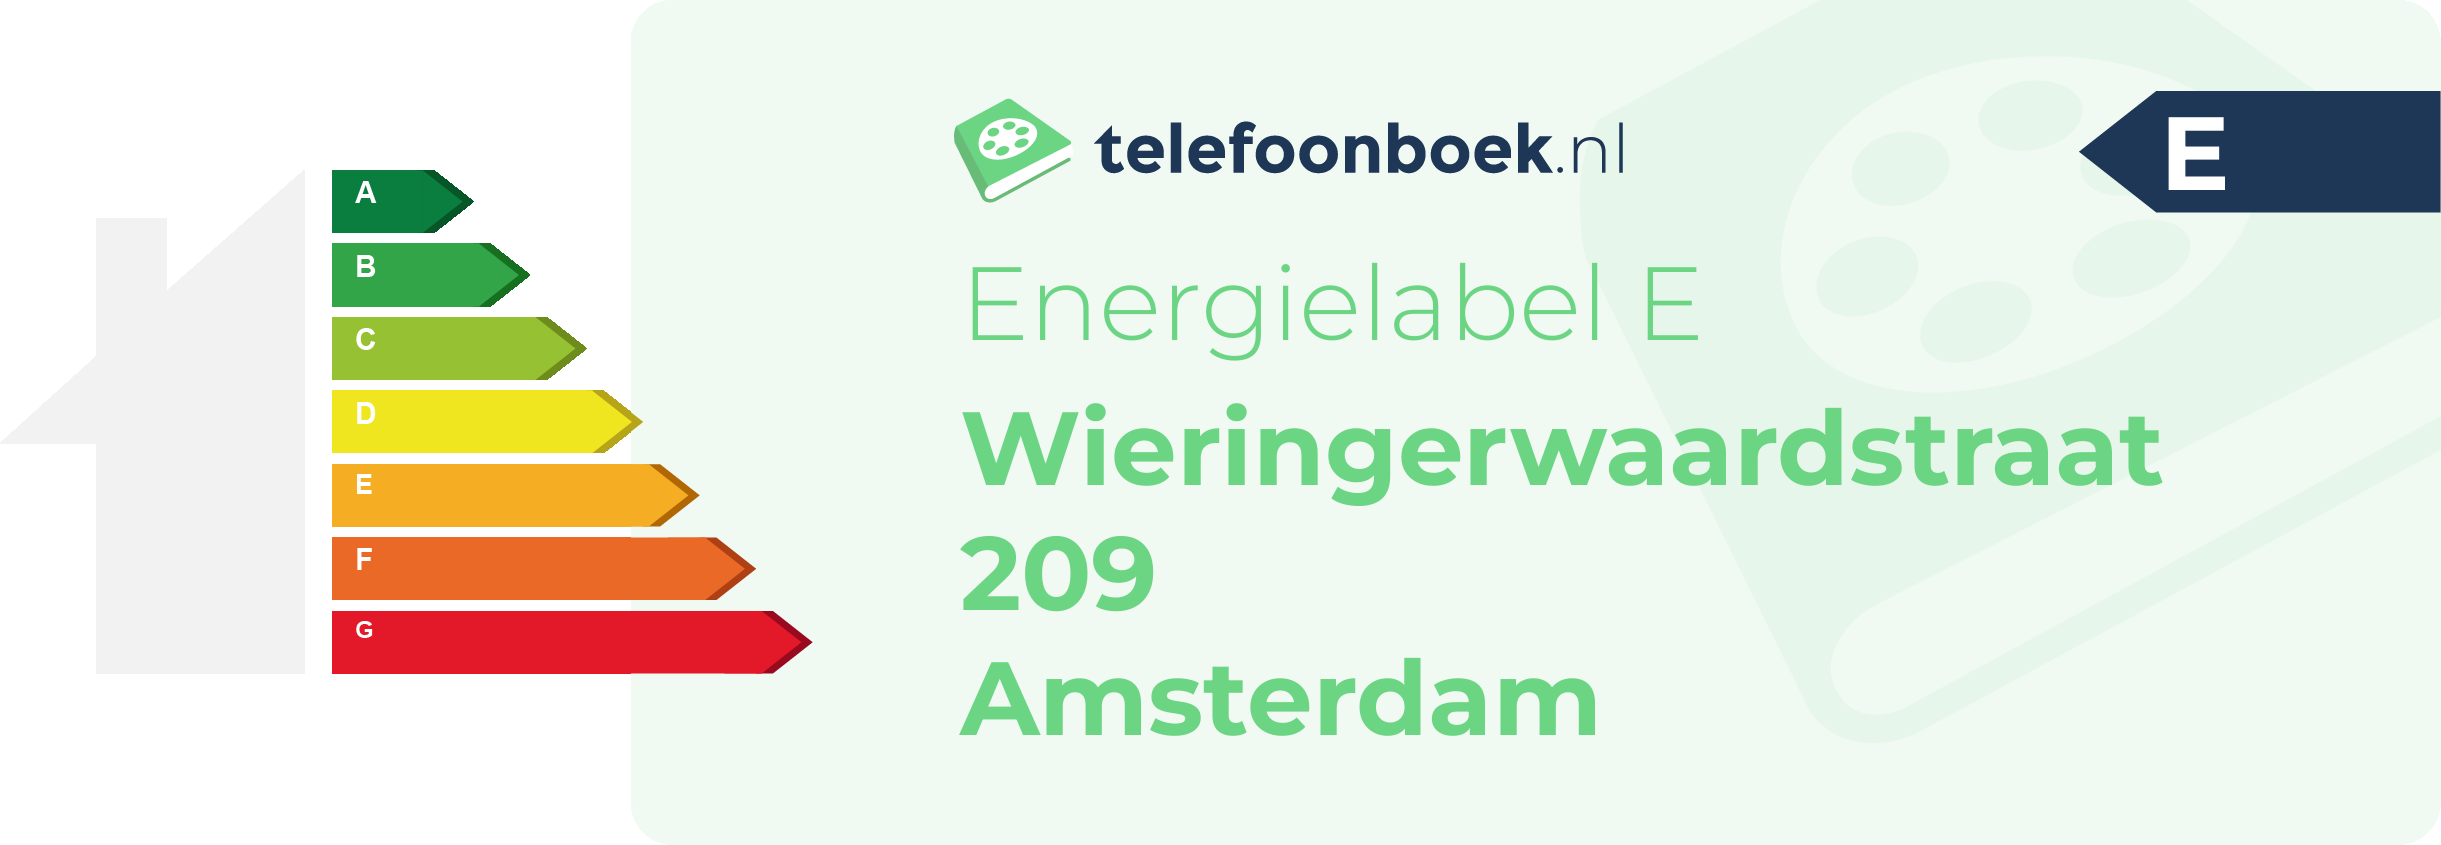 Energielabel Wieringerwaardstraat 209 Amsterdam